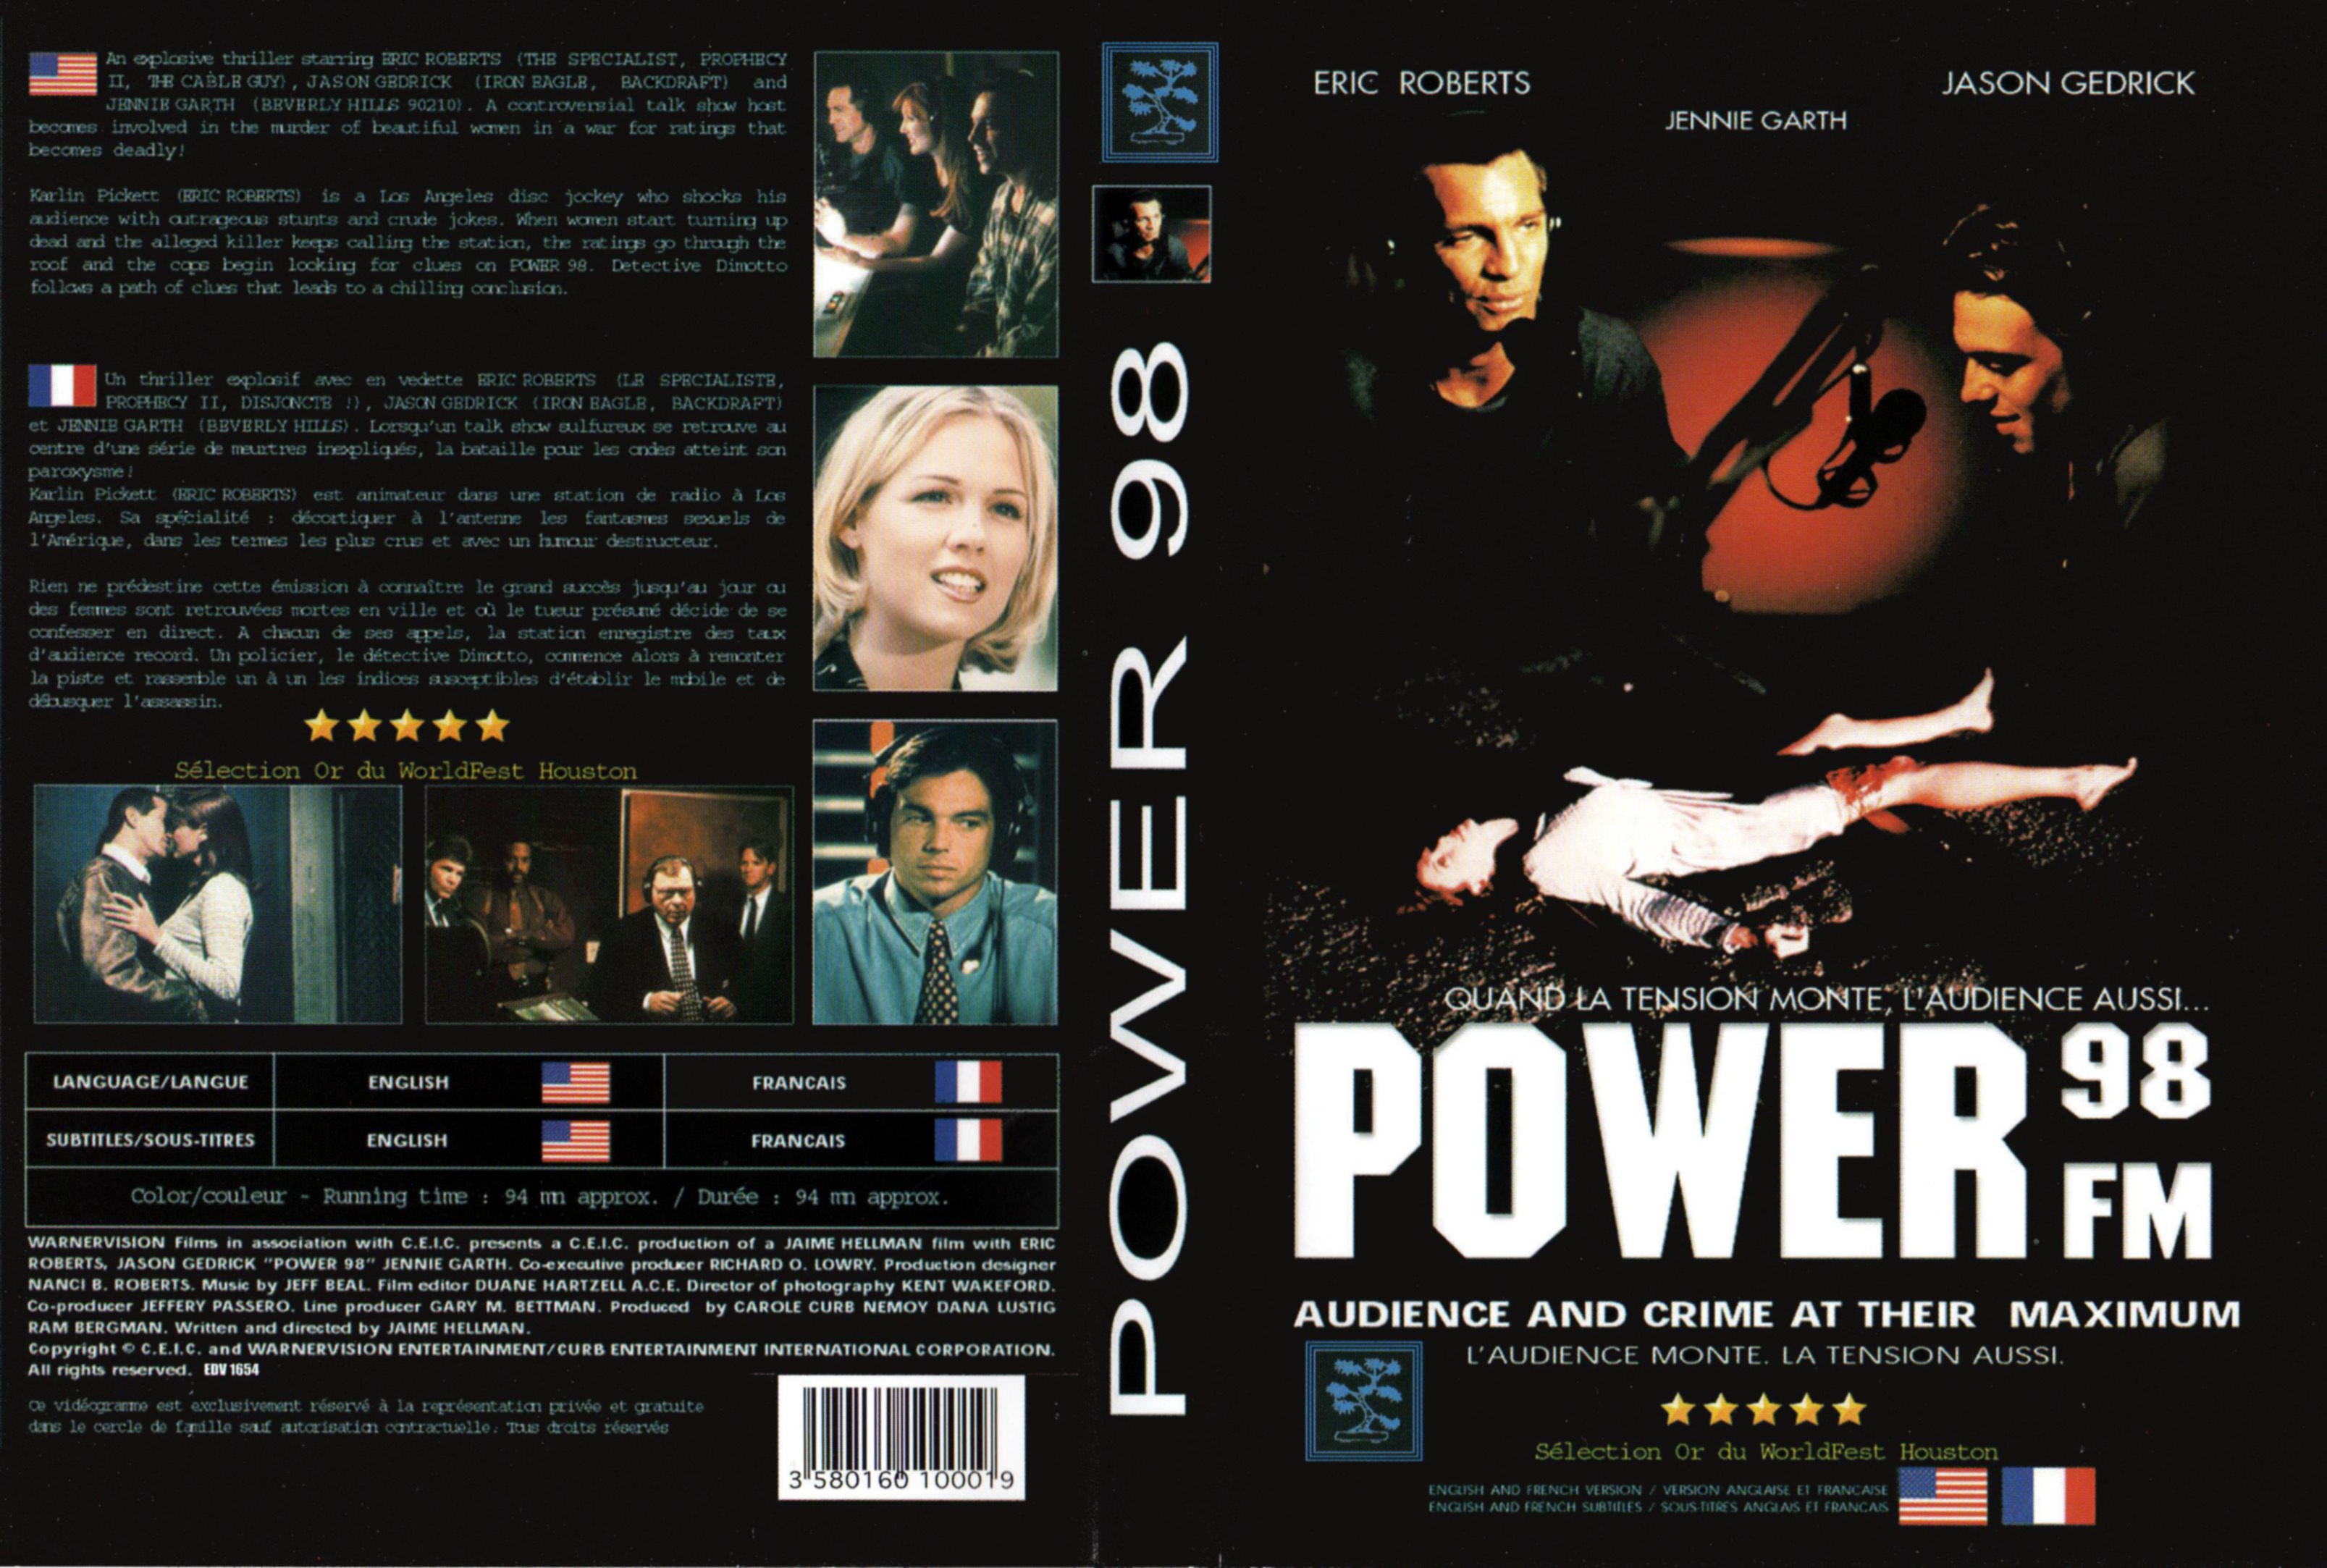 Jaquette DVD Power 98 fm